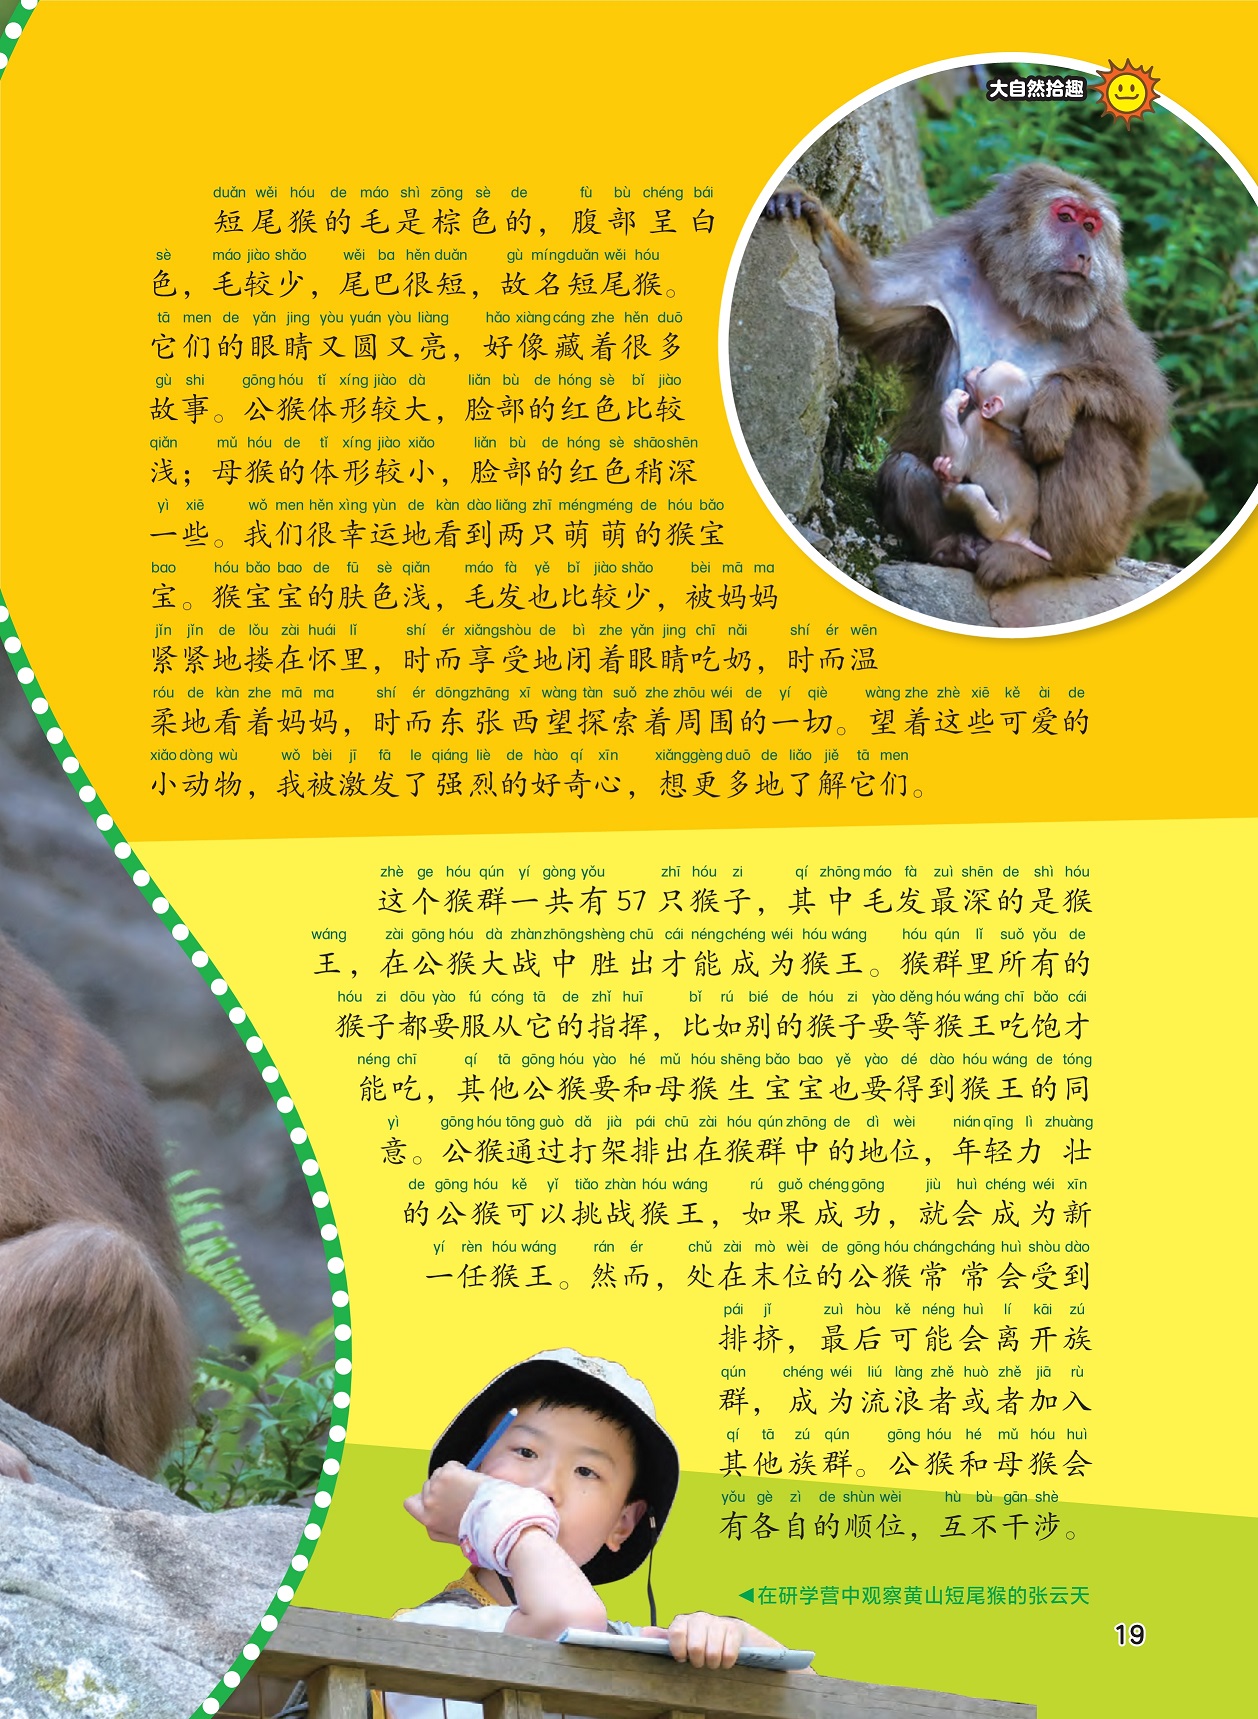 黄山短尾猴的外表,黄山短尾猴的族群生活